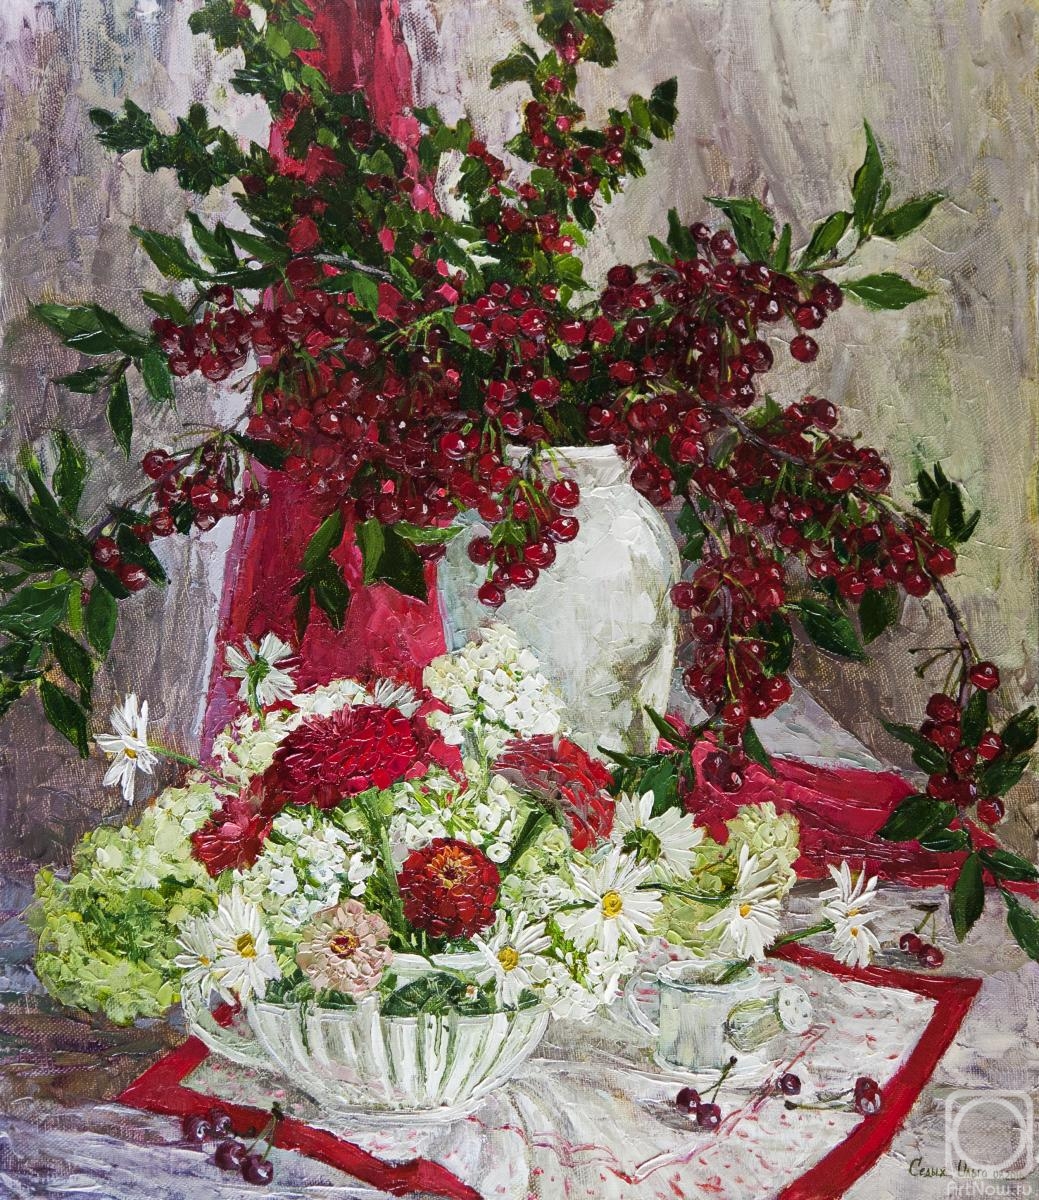 Sedyh Olga. Bouquet with cherries